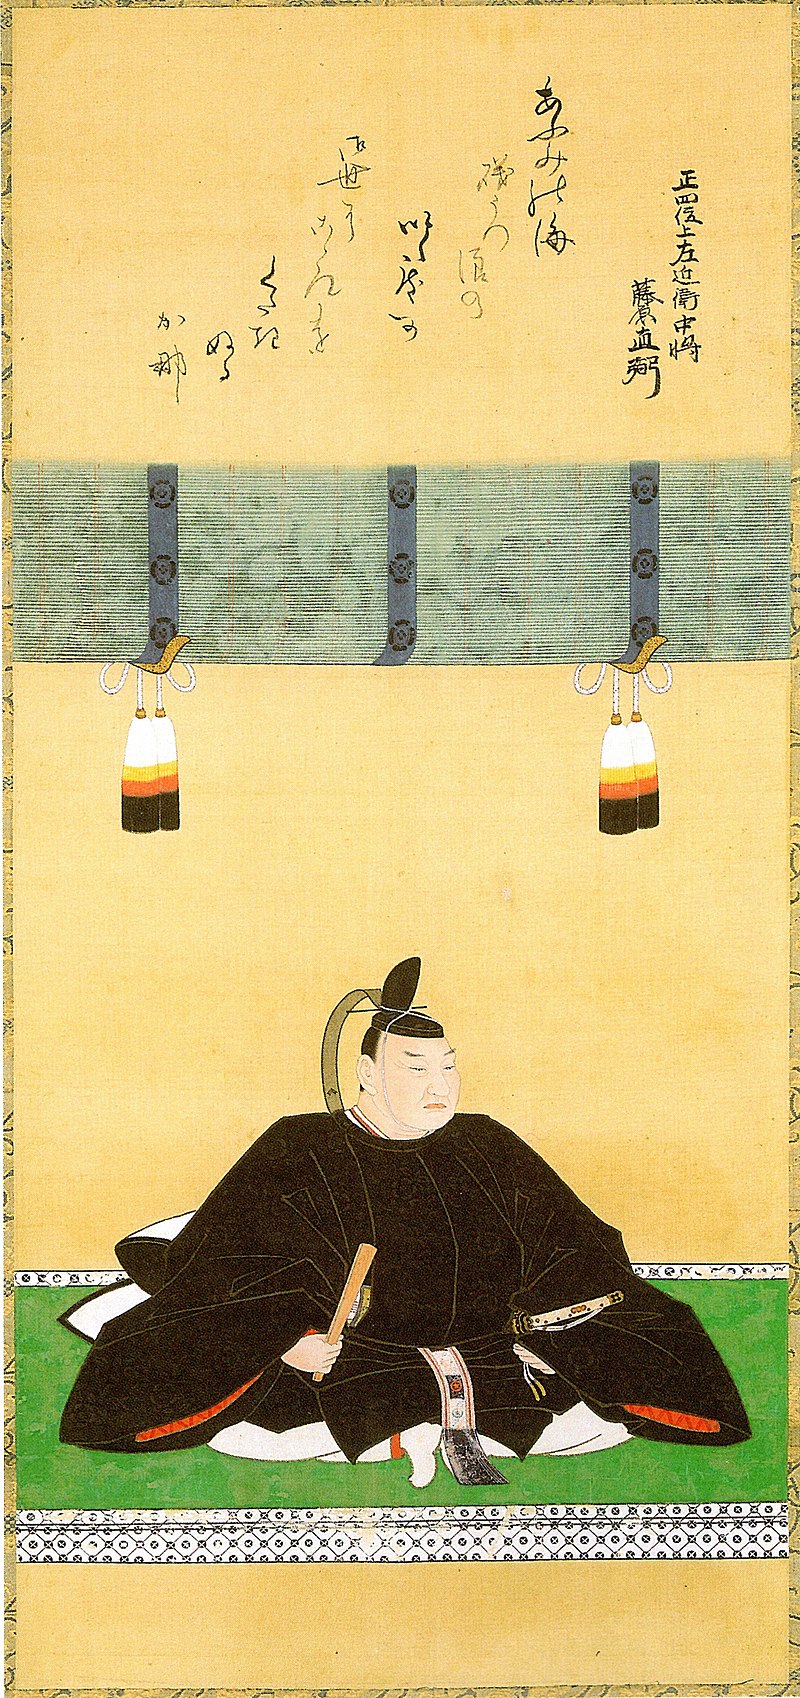 井伊直弼肖像（Wikipediaより20211011ダウンロード）の画像。